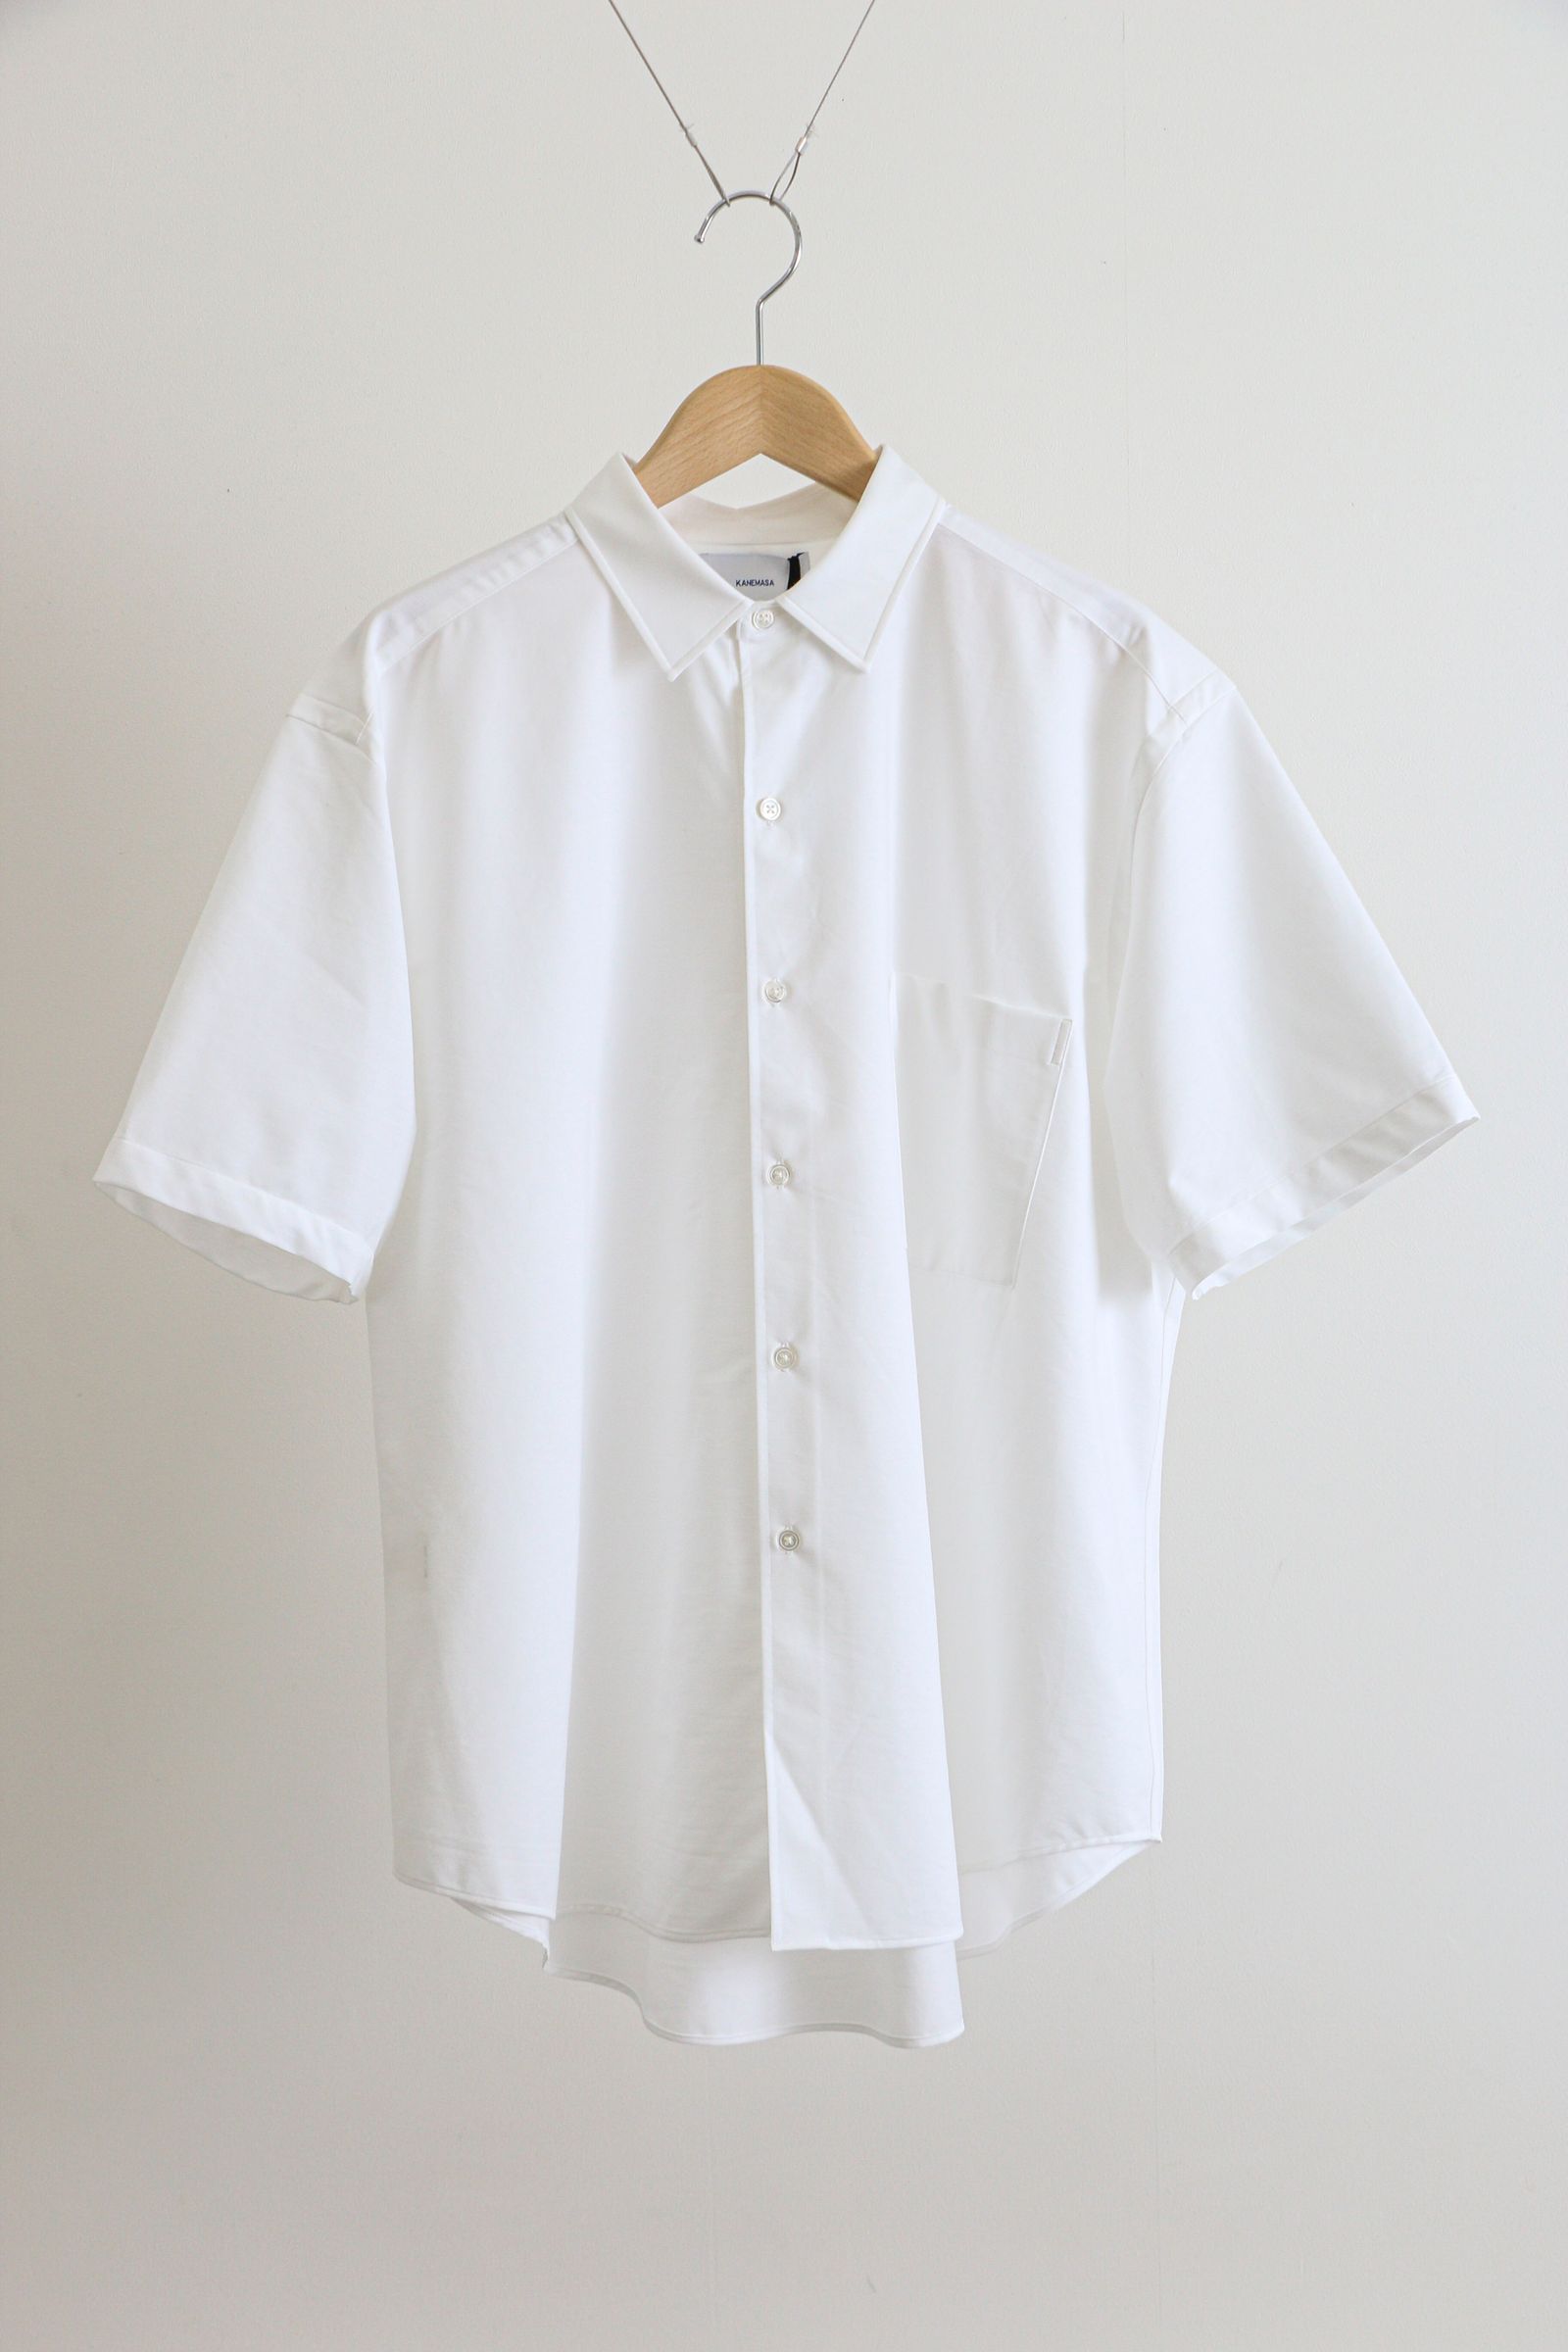 Royal Ox Dress Jersey Short Sleeve Shirt White / ショートスリーブシャツ / 半袖シャツ / - 2